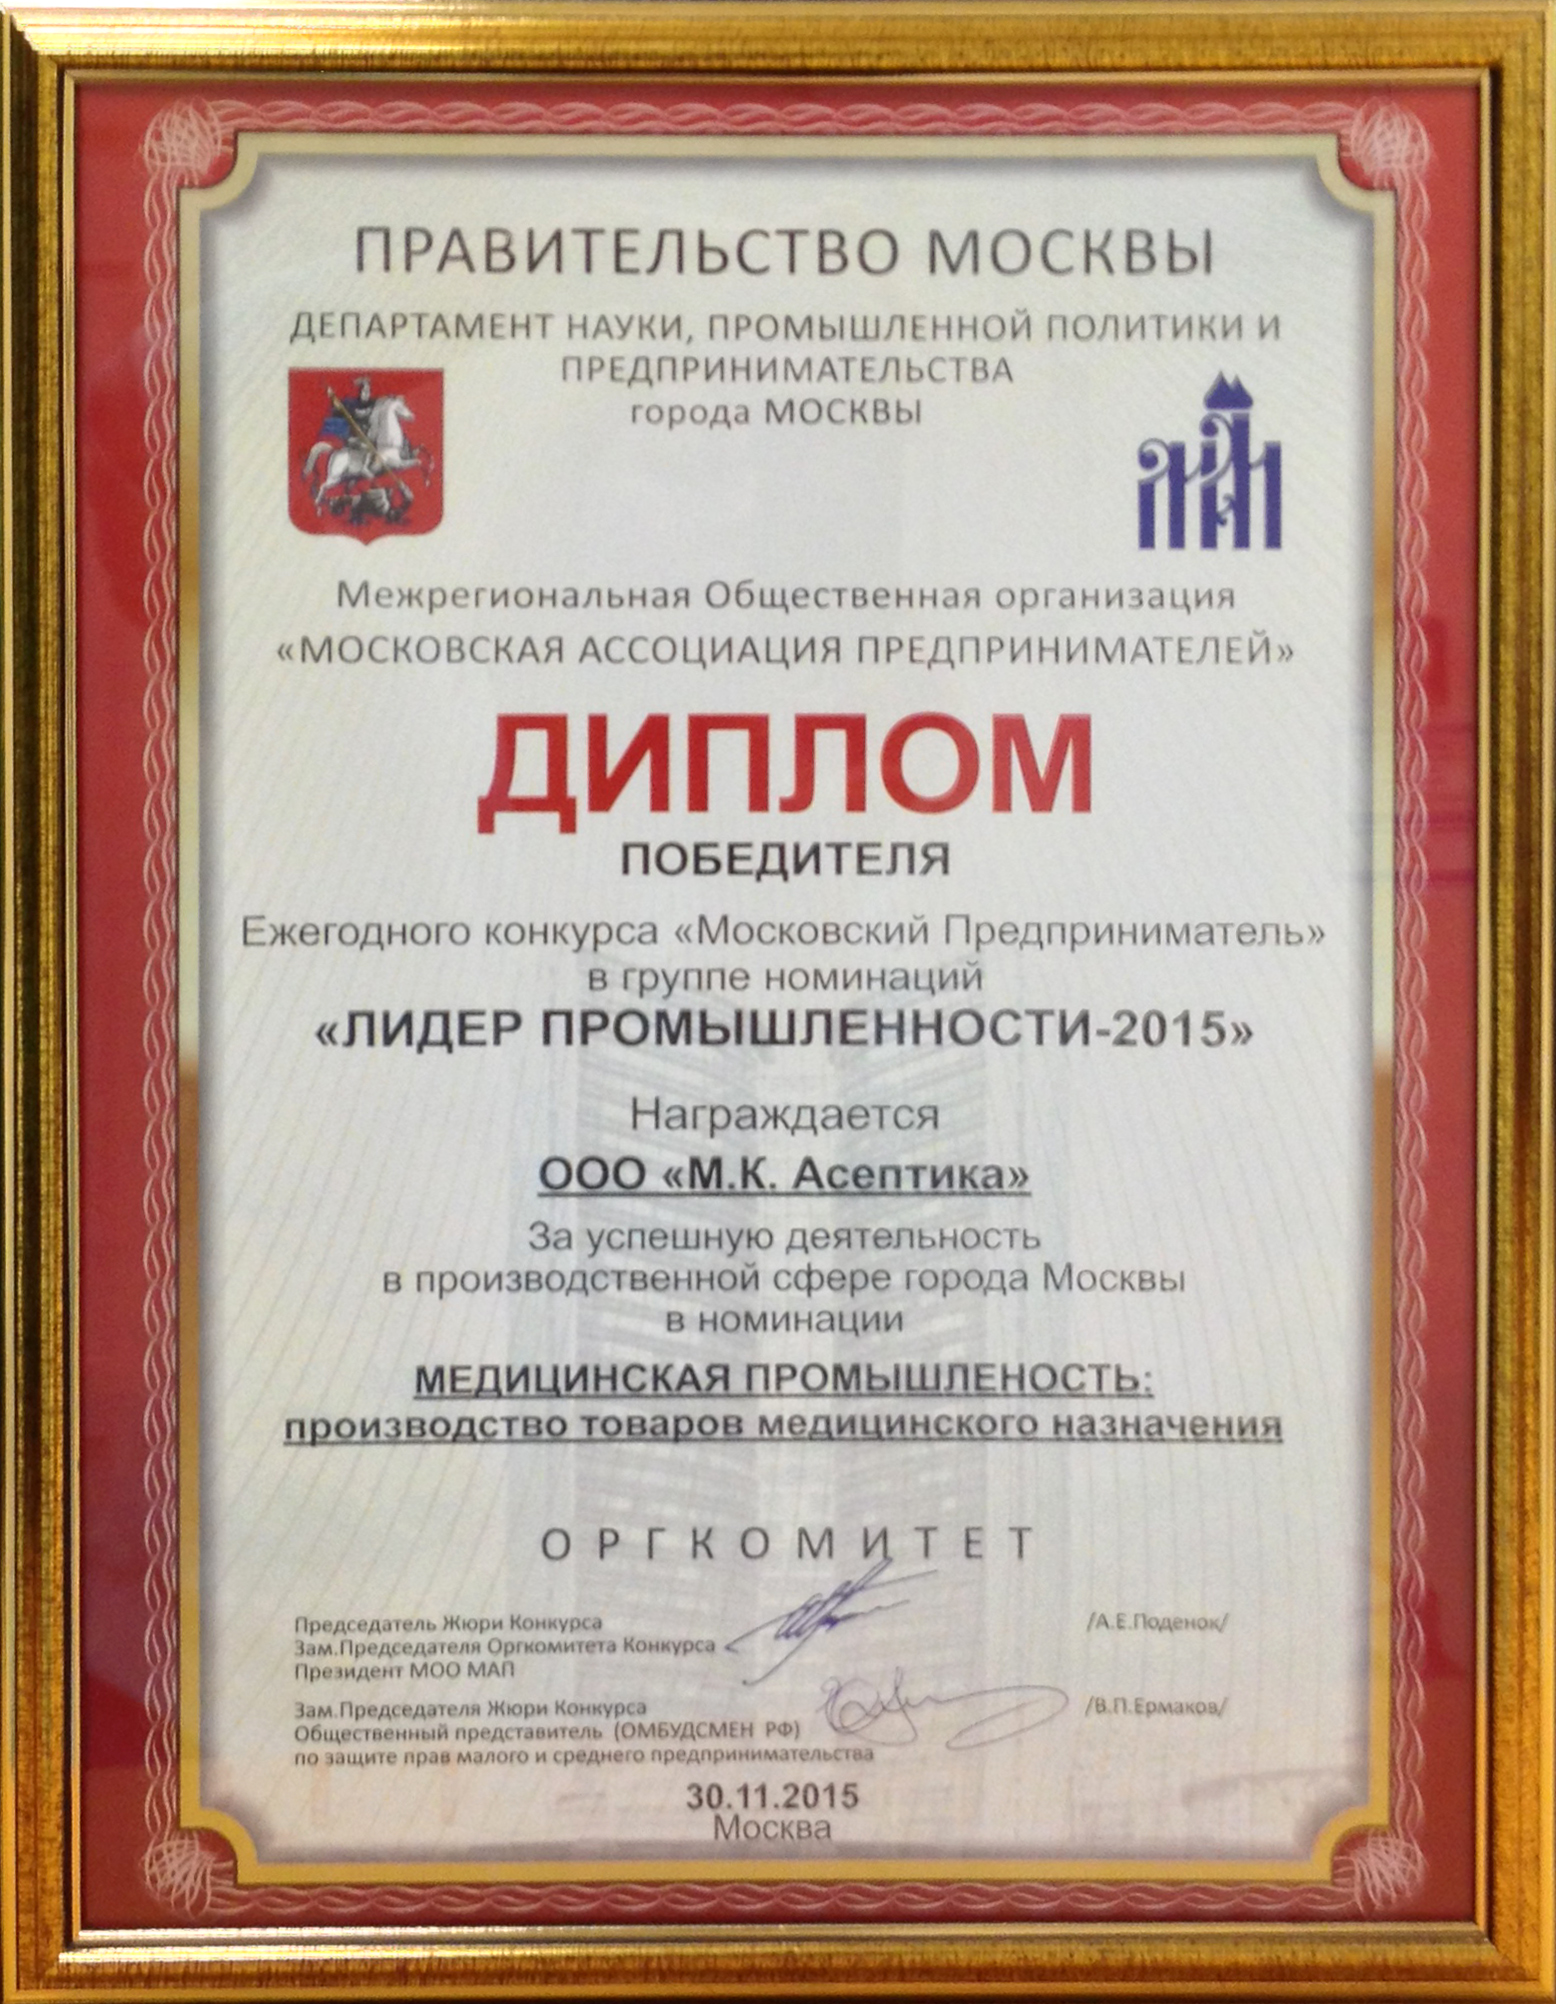 Диплом победителя ежегодного конкурса "Московский предприниматель" в группе номинаций "Лидер промышленности-2015"